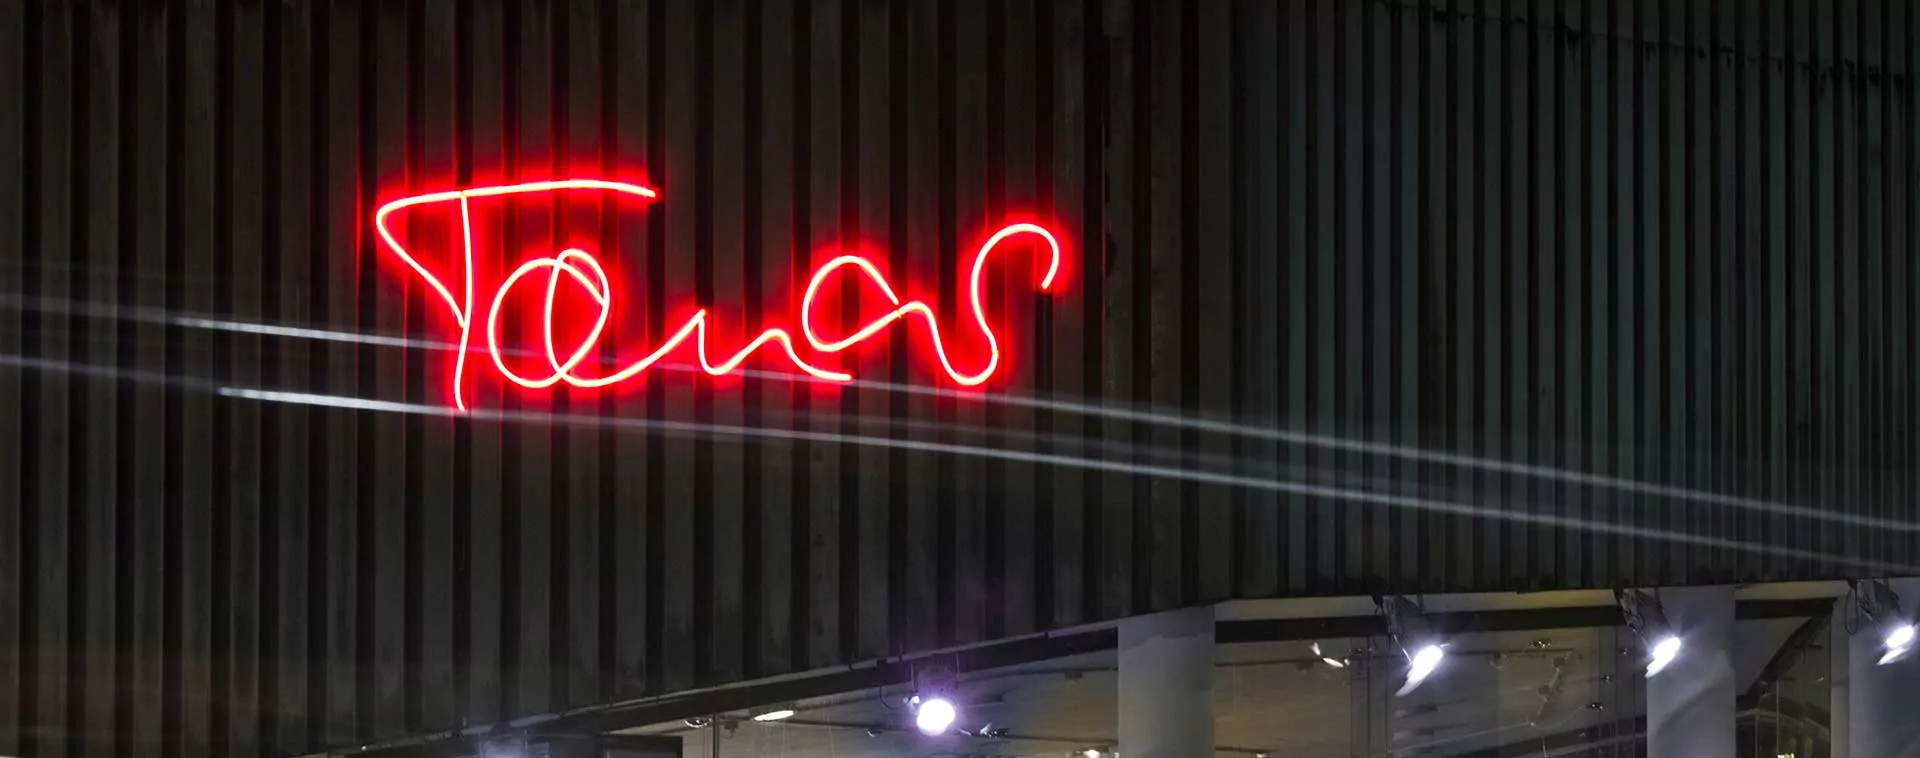 Neon Schriftzug des Tanas in Bochum am Schauspielhaus Bochum. Lichtwerbung von Hennerkes Licht + Werbung